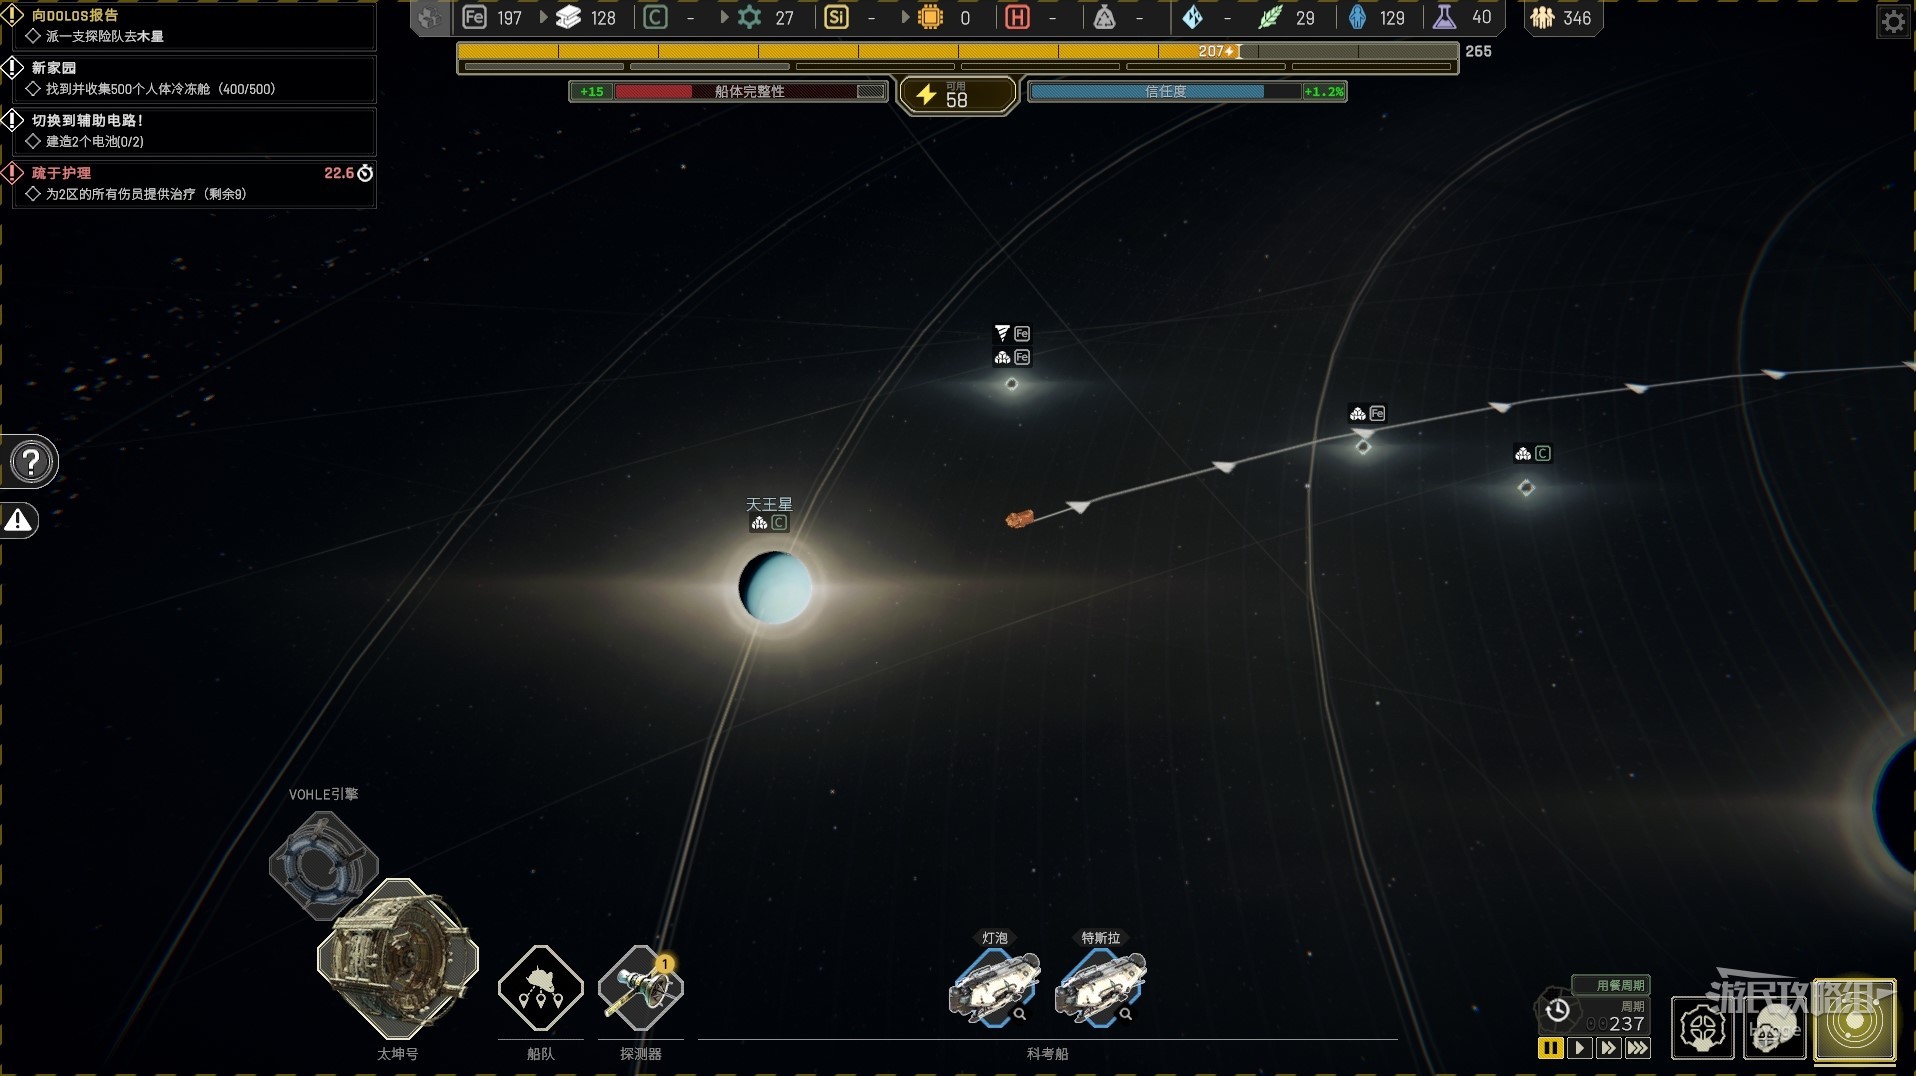 《伊克西翁IXION》新手入门图文攻略 游戏玩法与机制介绍_船舱外部和宇宙空间介绍 - 第2张